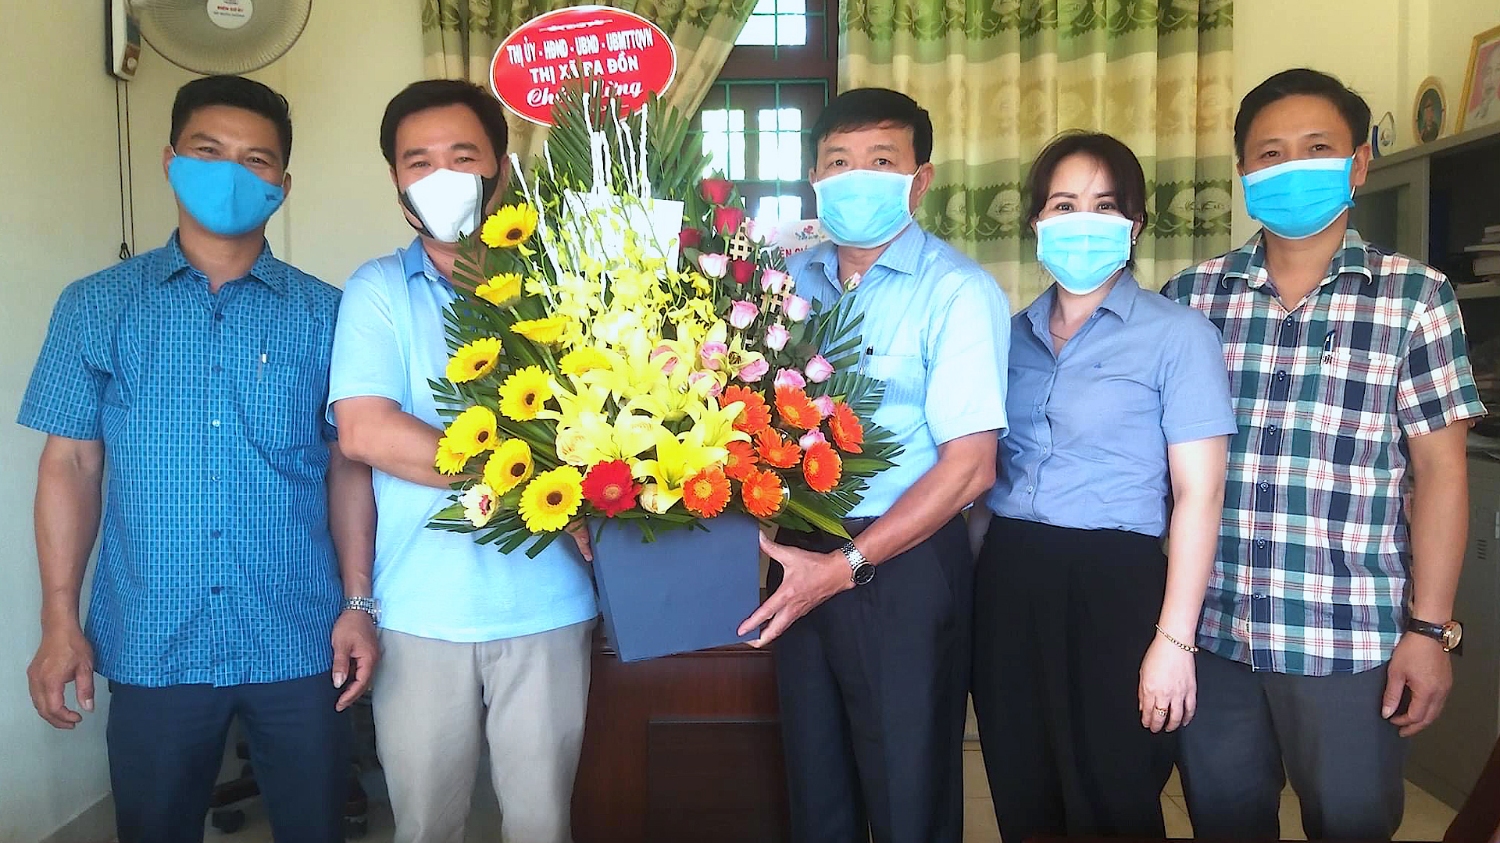 Đồng chí Đoàn Minh Thọ, Phó bí thư Thị ủy, Chủ tịch UBND thị xã thăm và tặng hoa chúc mừng Đài TT-TH thị xã Ba Đồn nhân dịp kỷ niệm 96 năm Ngày Báo chí Cách mạng Việt Nam